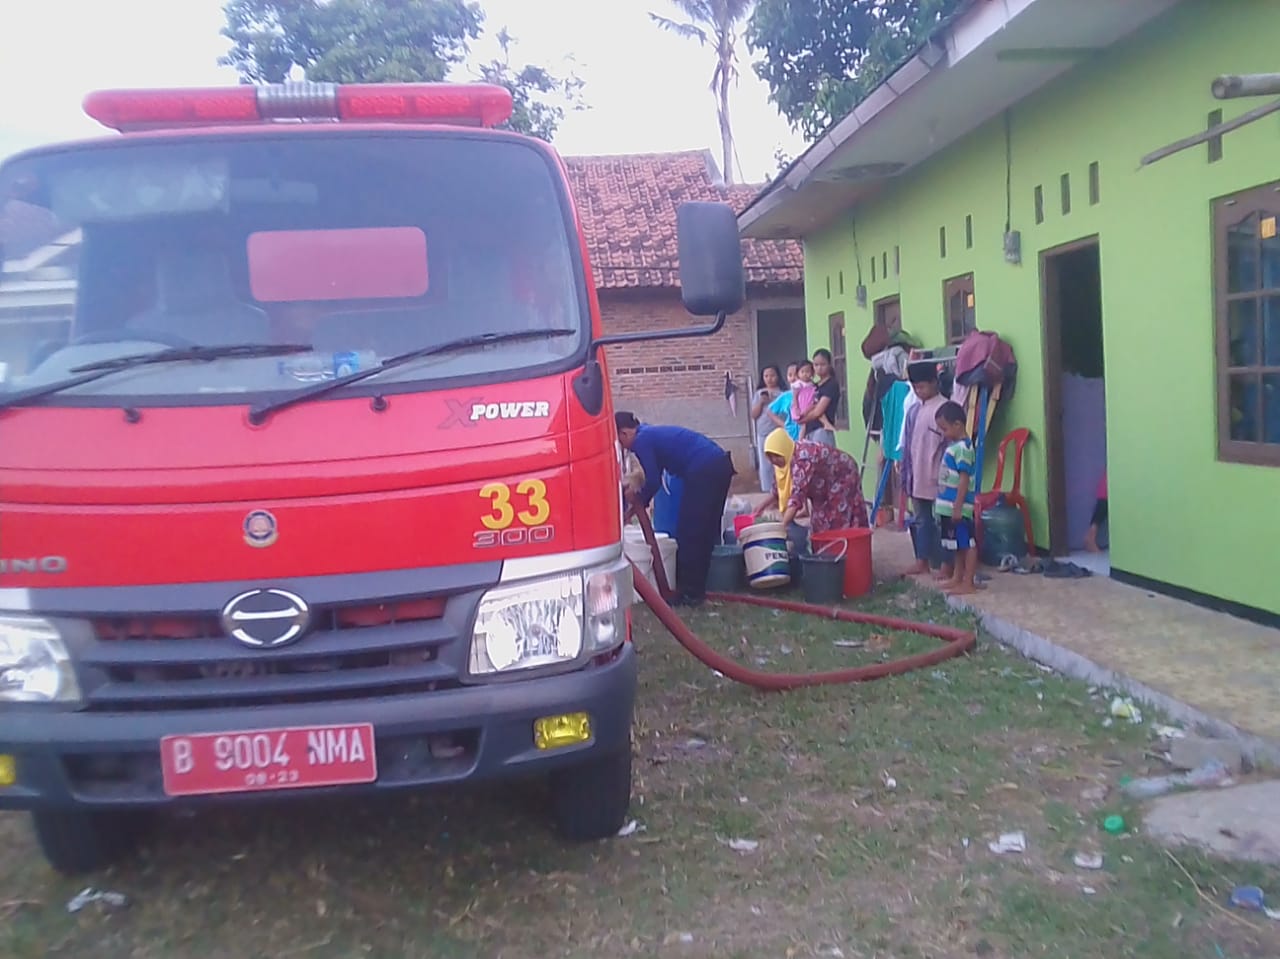 Tampak warga yang megalami kesulitan air bersih mendapatkan bantuan air bersih dari Badan Penanggulangan Bencana Daerah (BPBD)Kabupaten Tangerang.